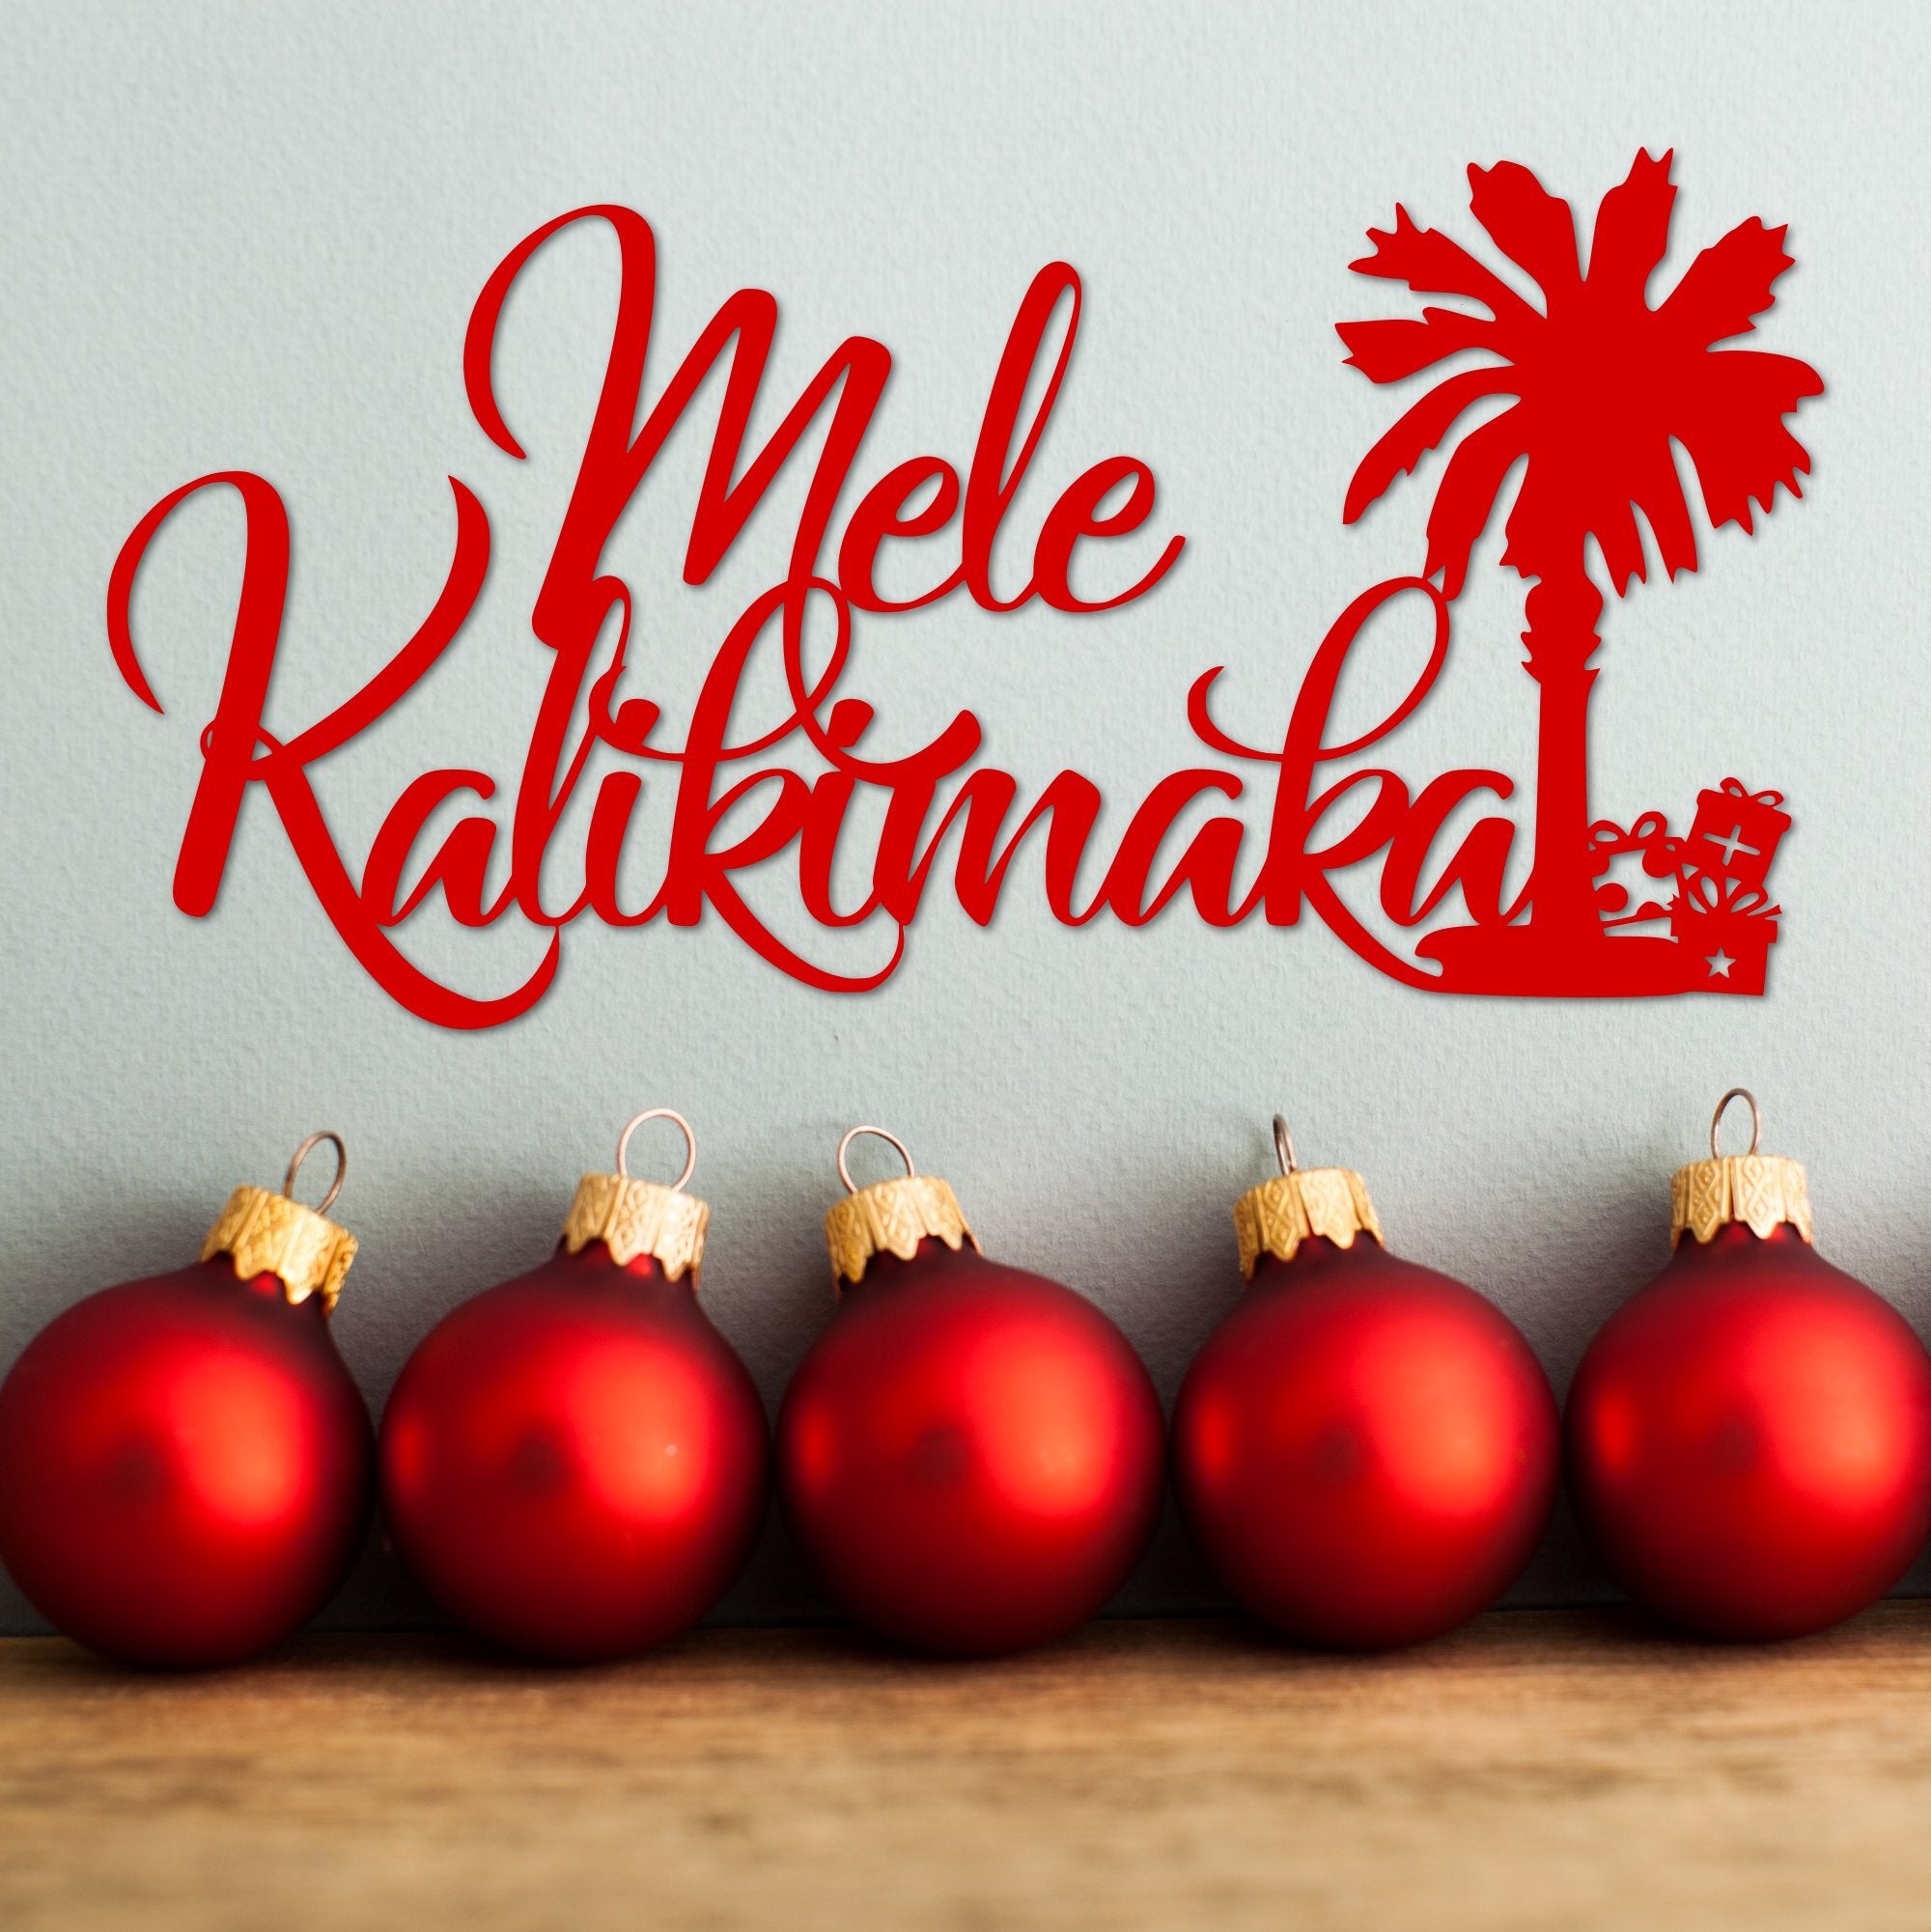 Hawaii Christmas Wallpapers